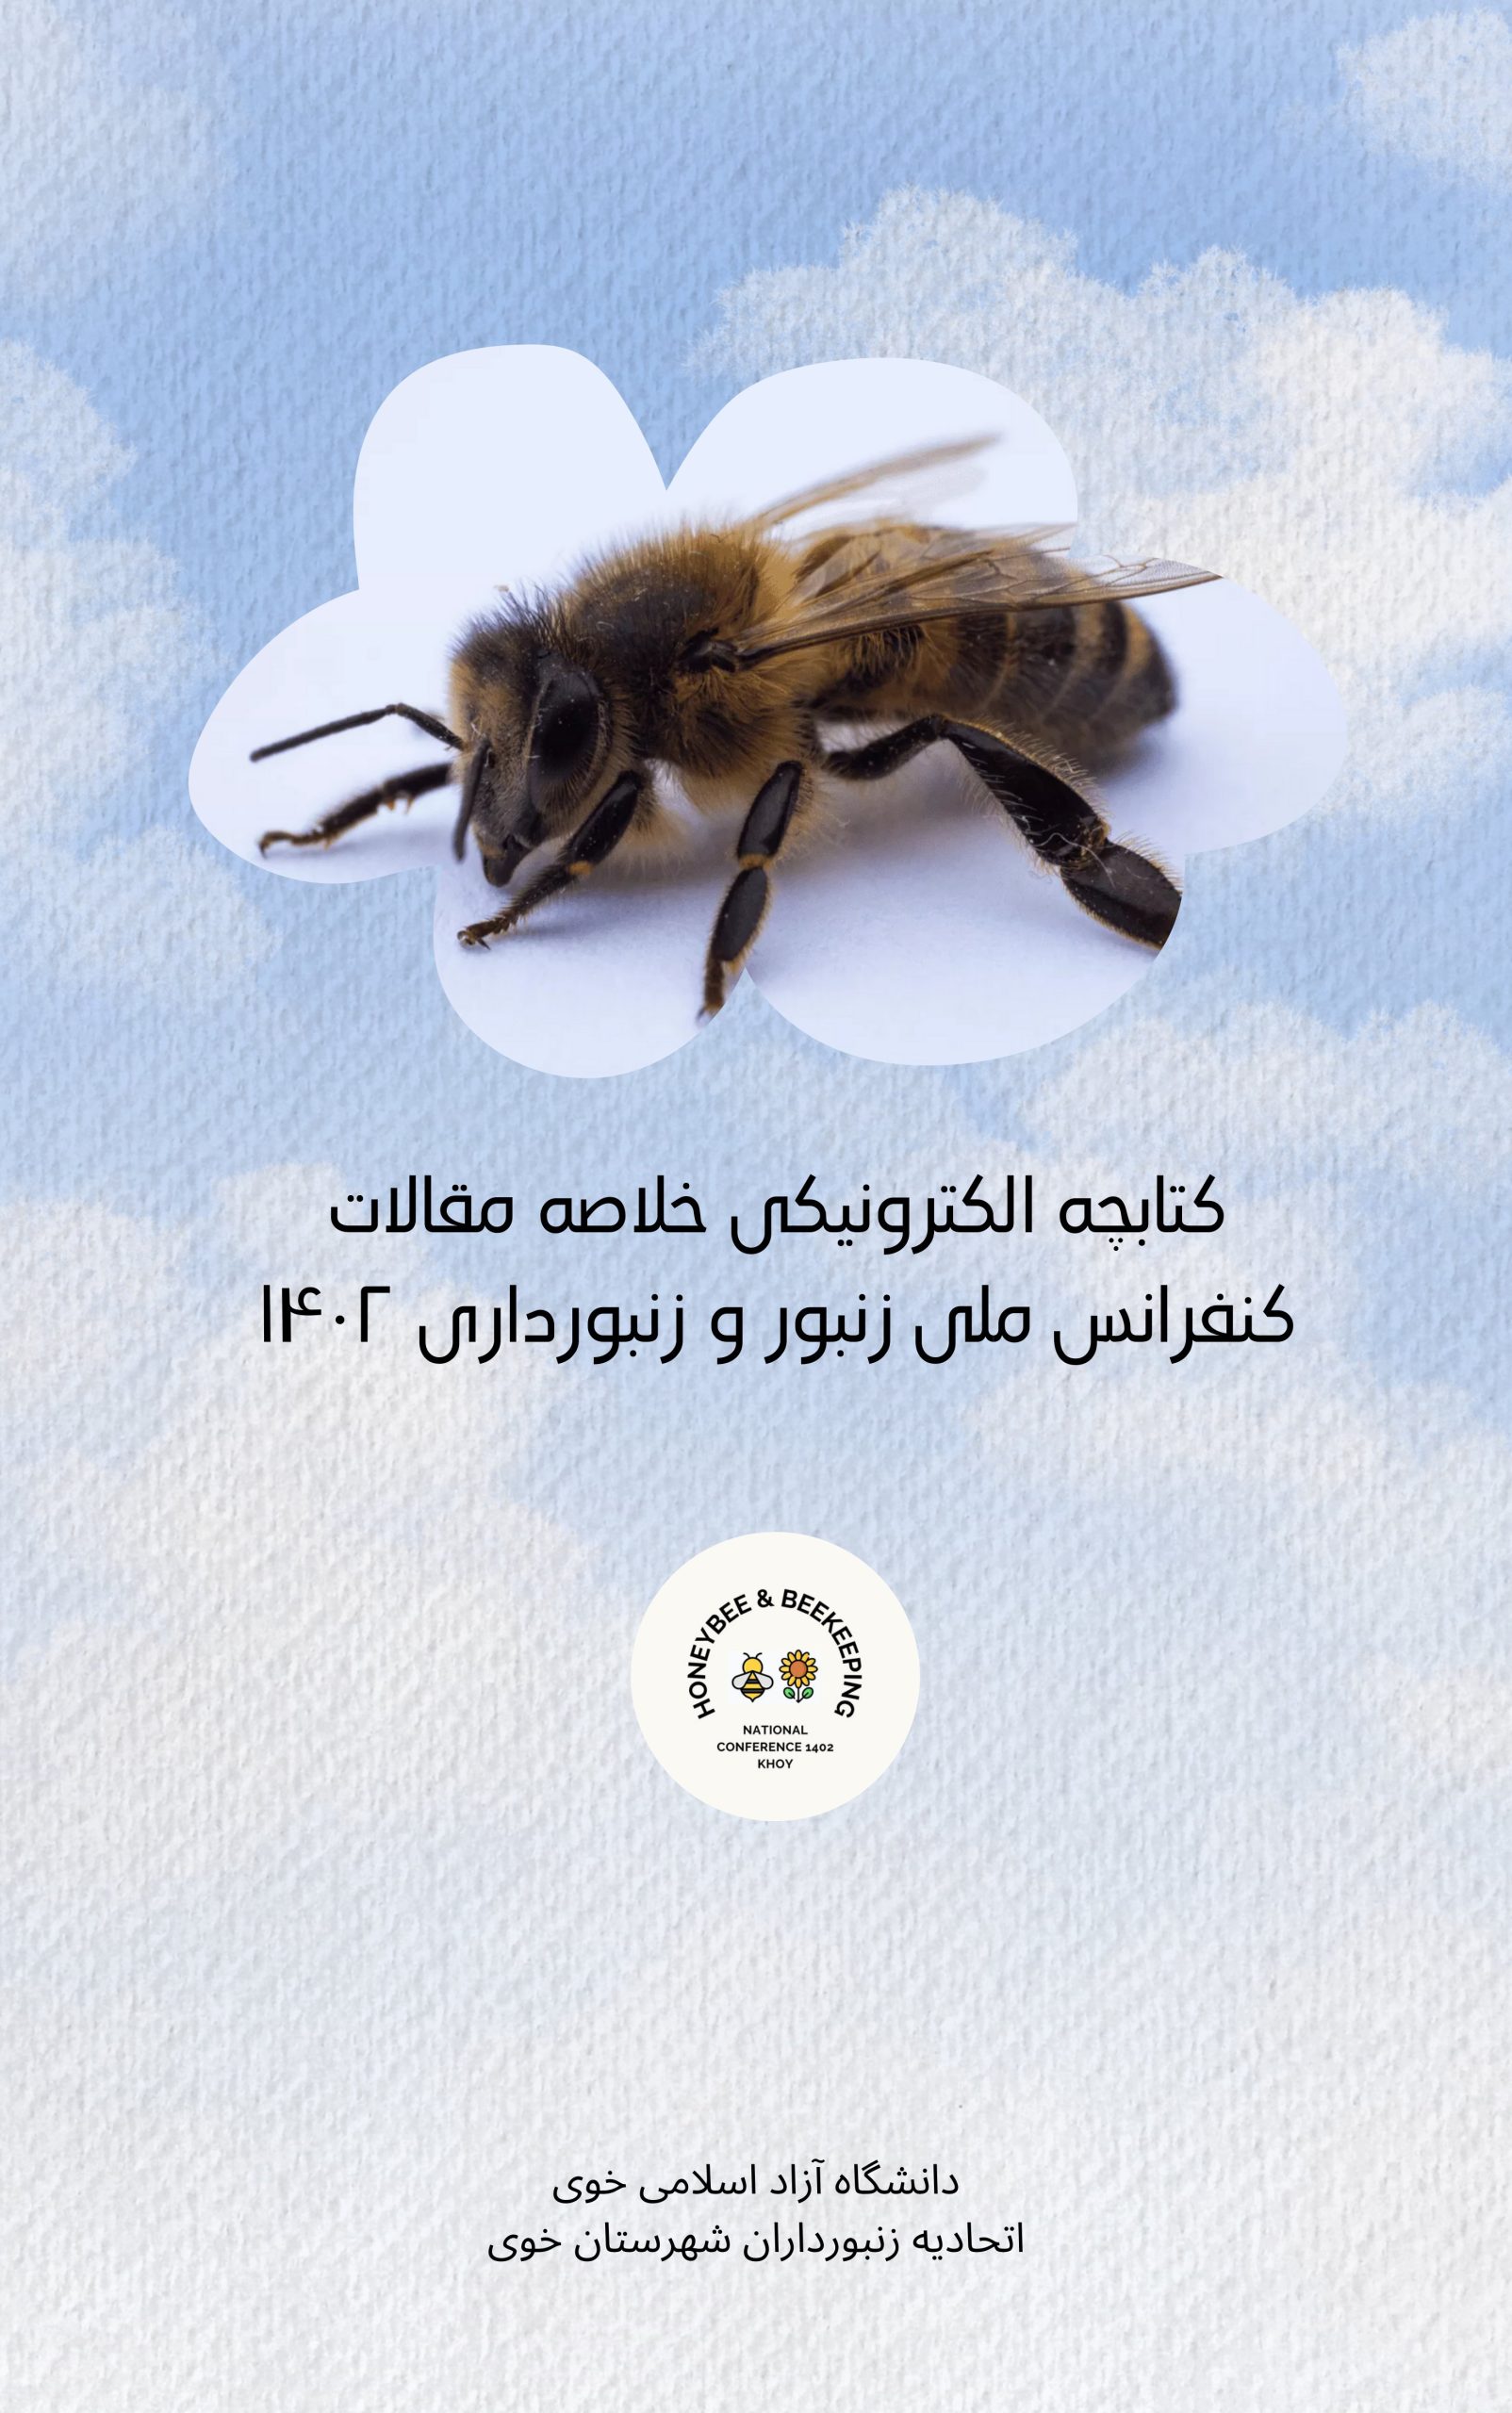 کنفرانس ملی زنبور و زنبورداری